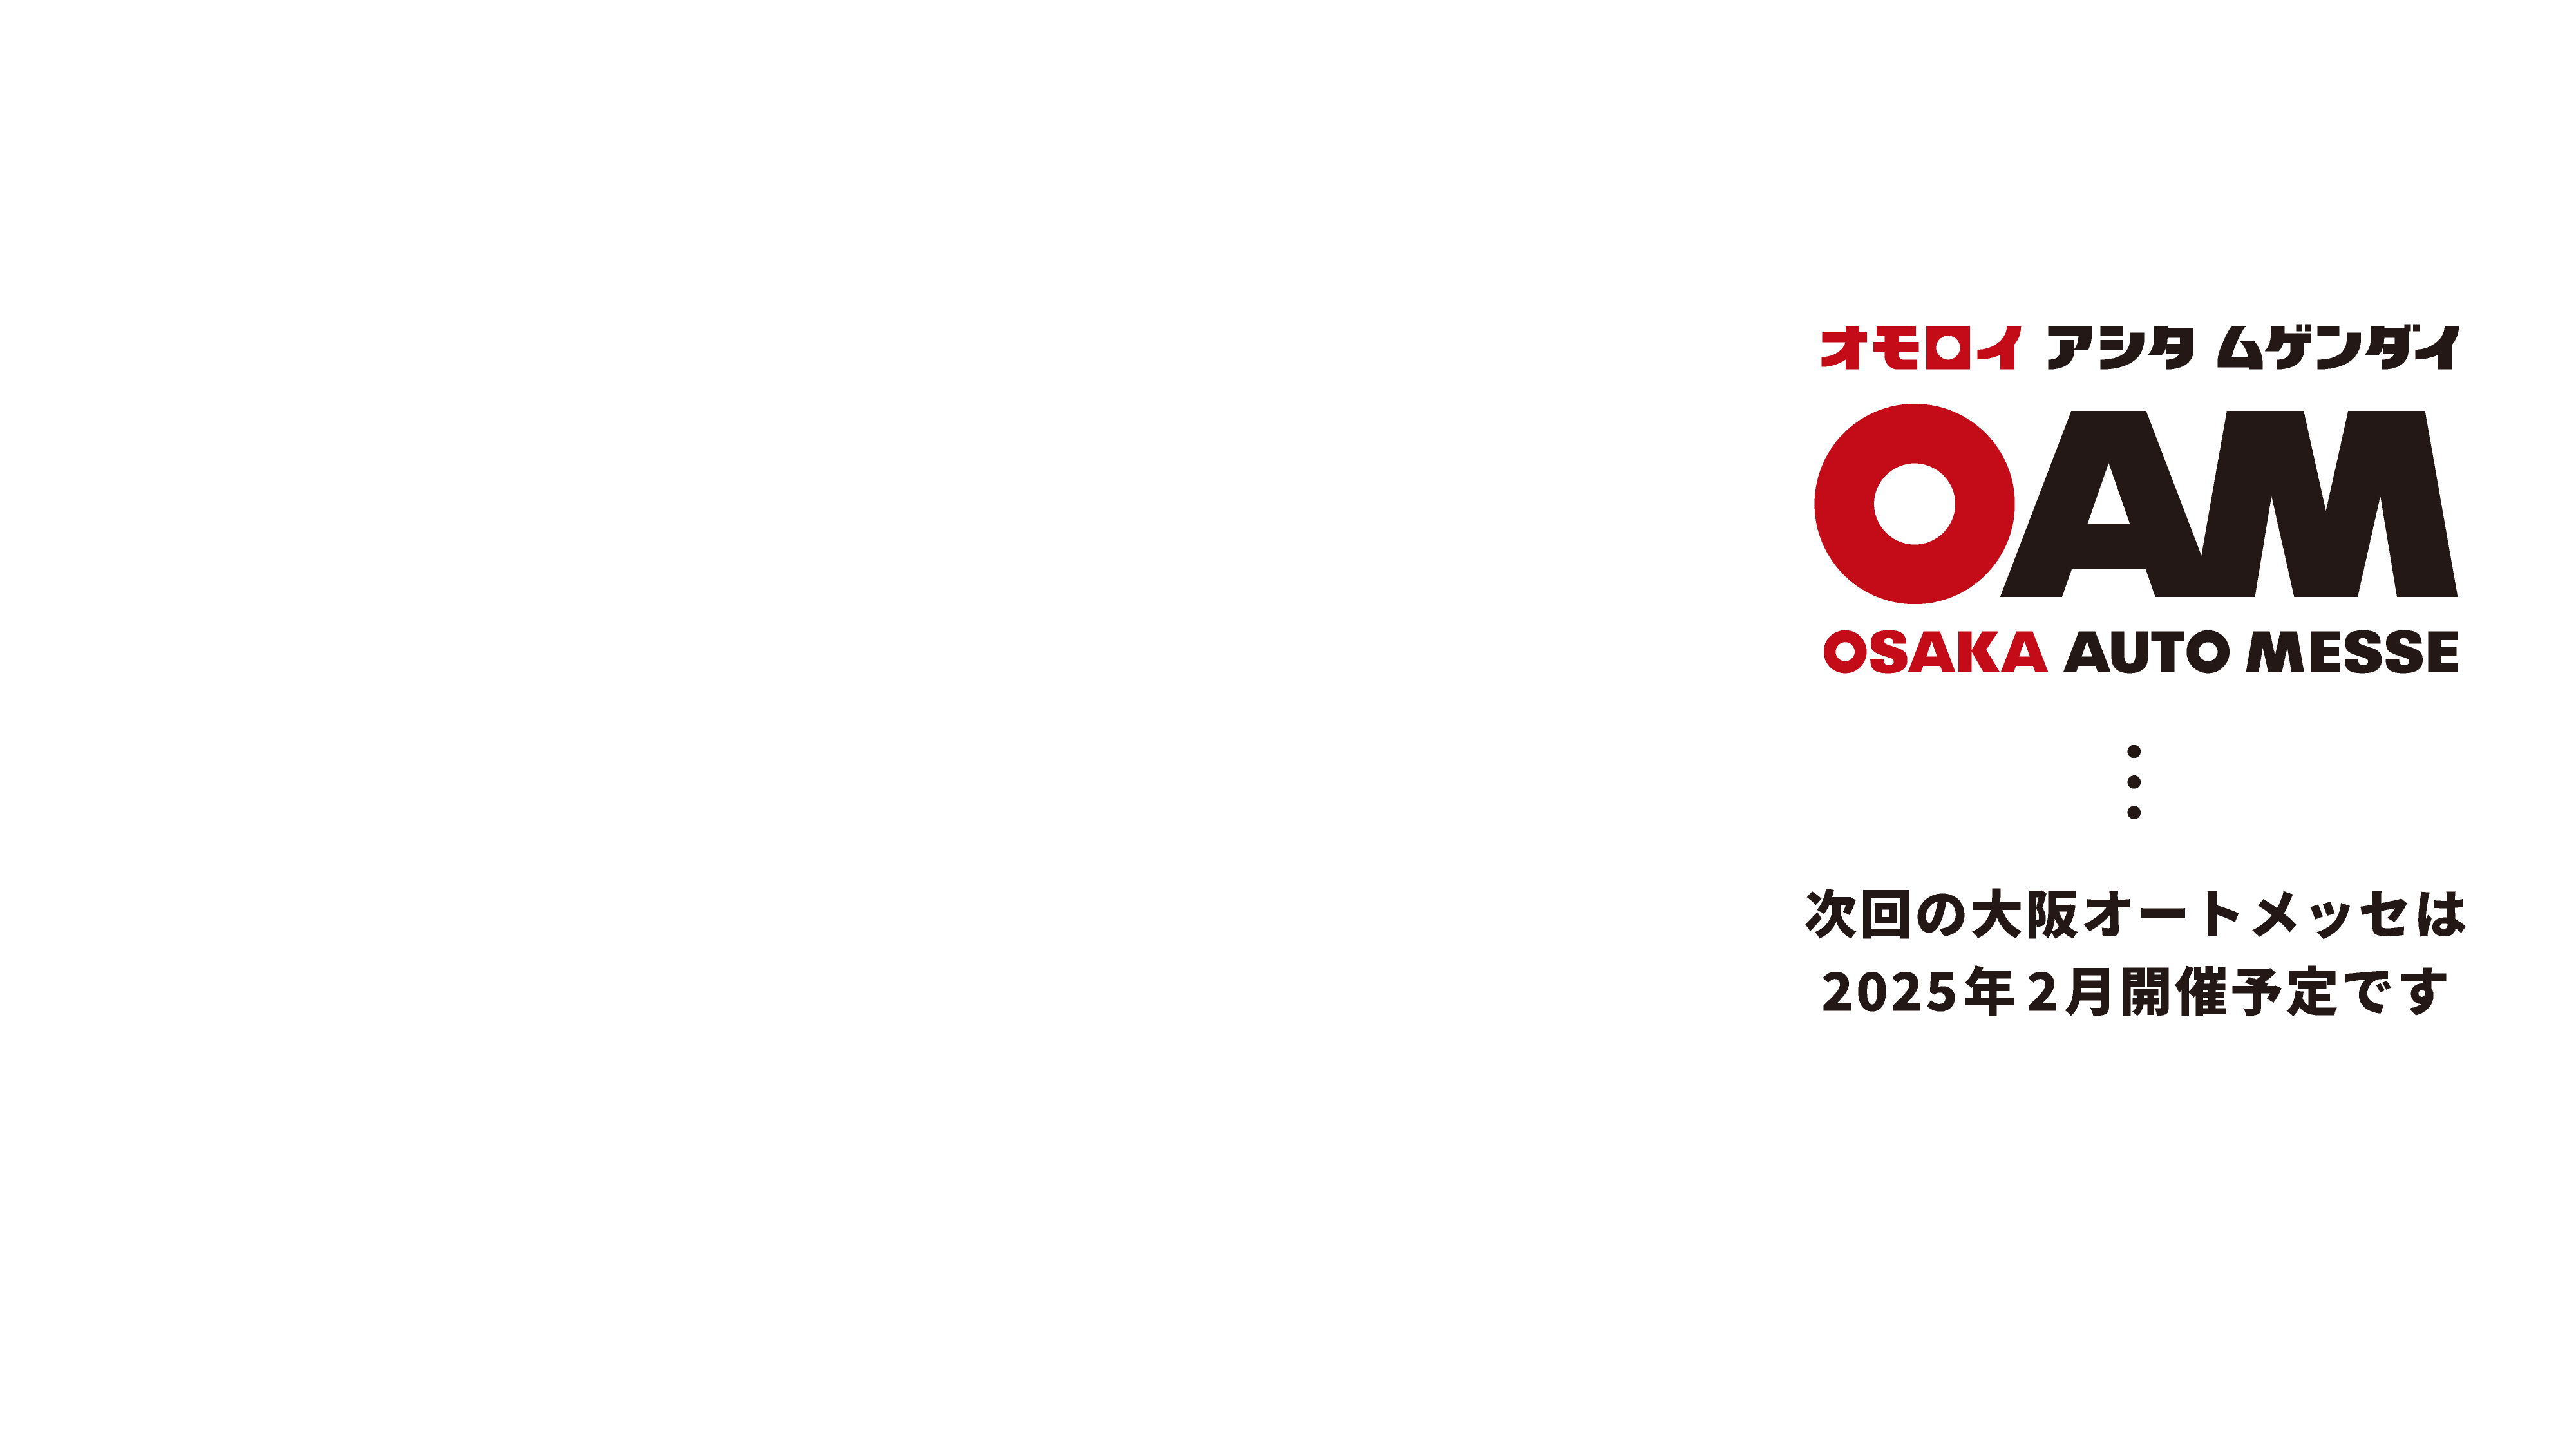 大阪オートメッセ / オモロイ アシタ ムゲンダイ / 次回の大阪オートメッセは2025年2月開催予定です。